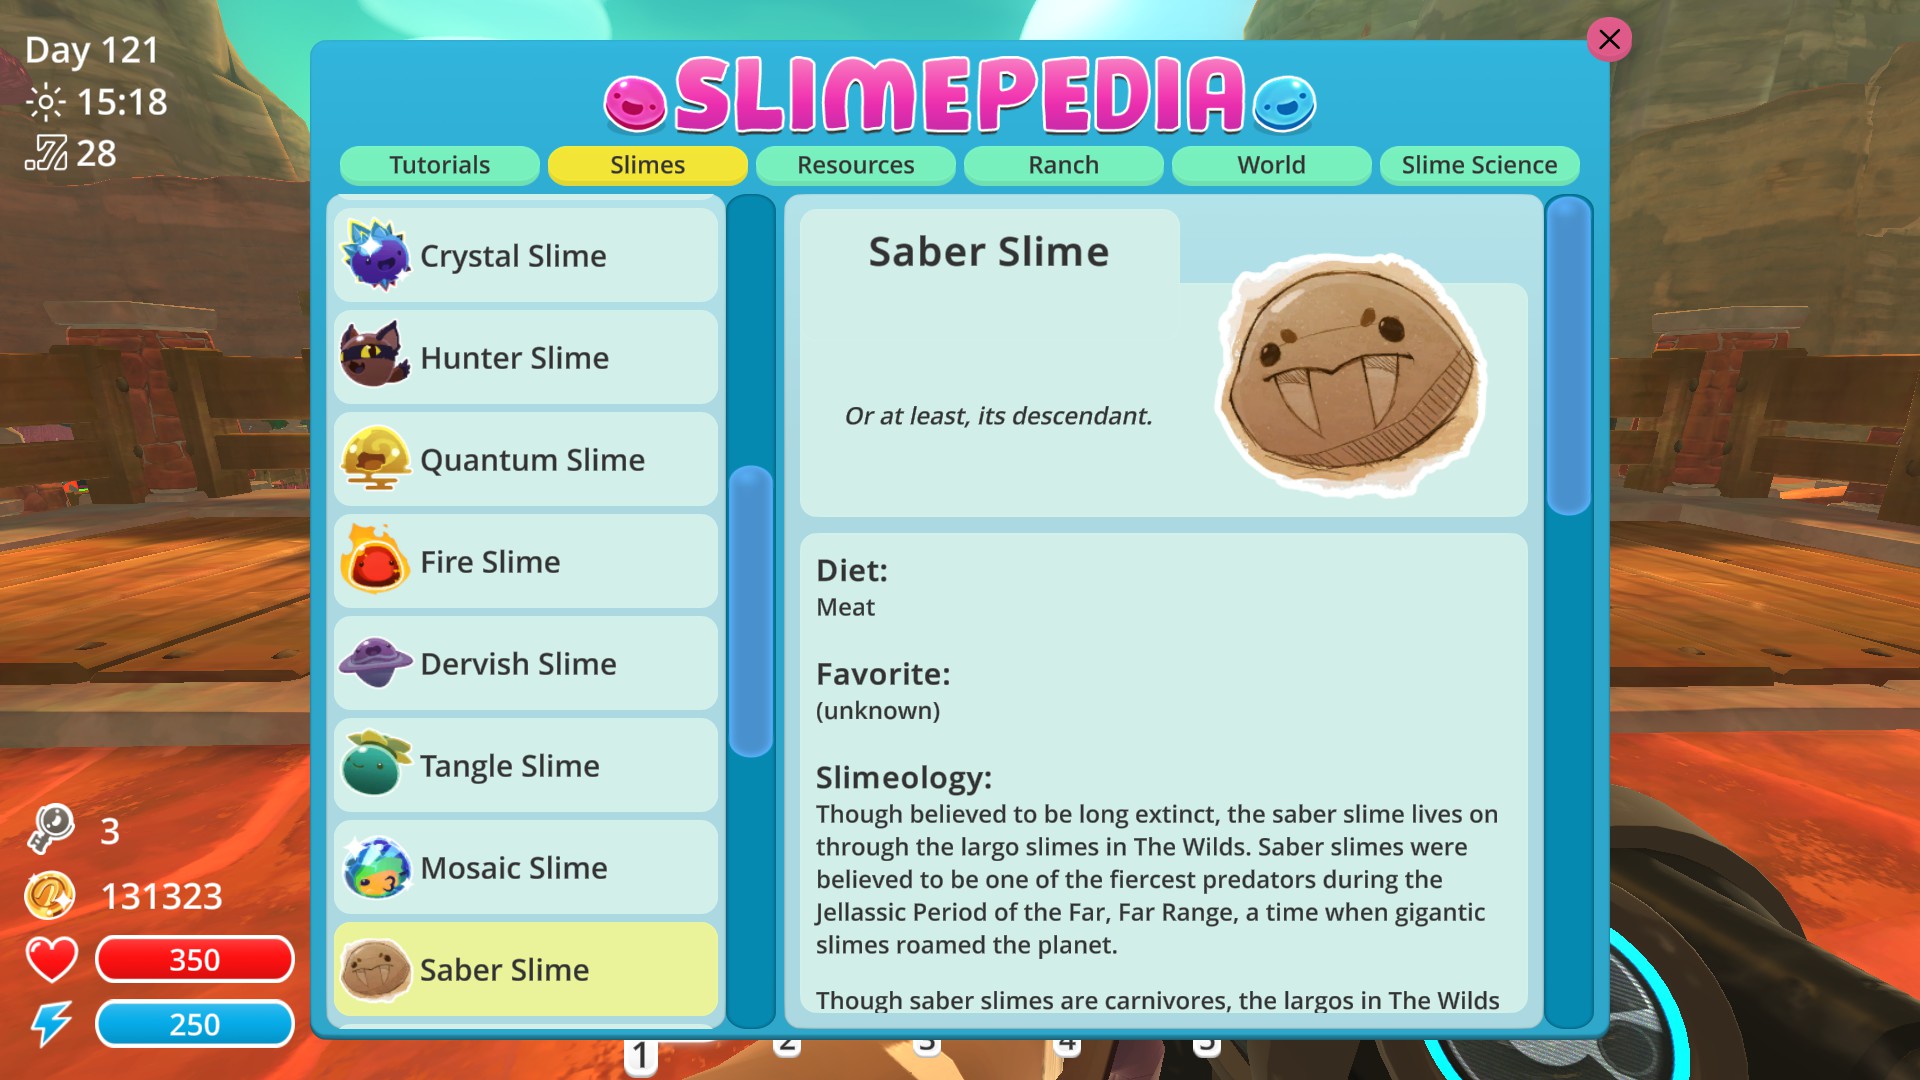 Slime Rancher: Tarr Slime, Explained